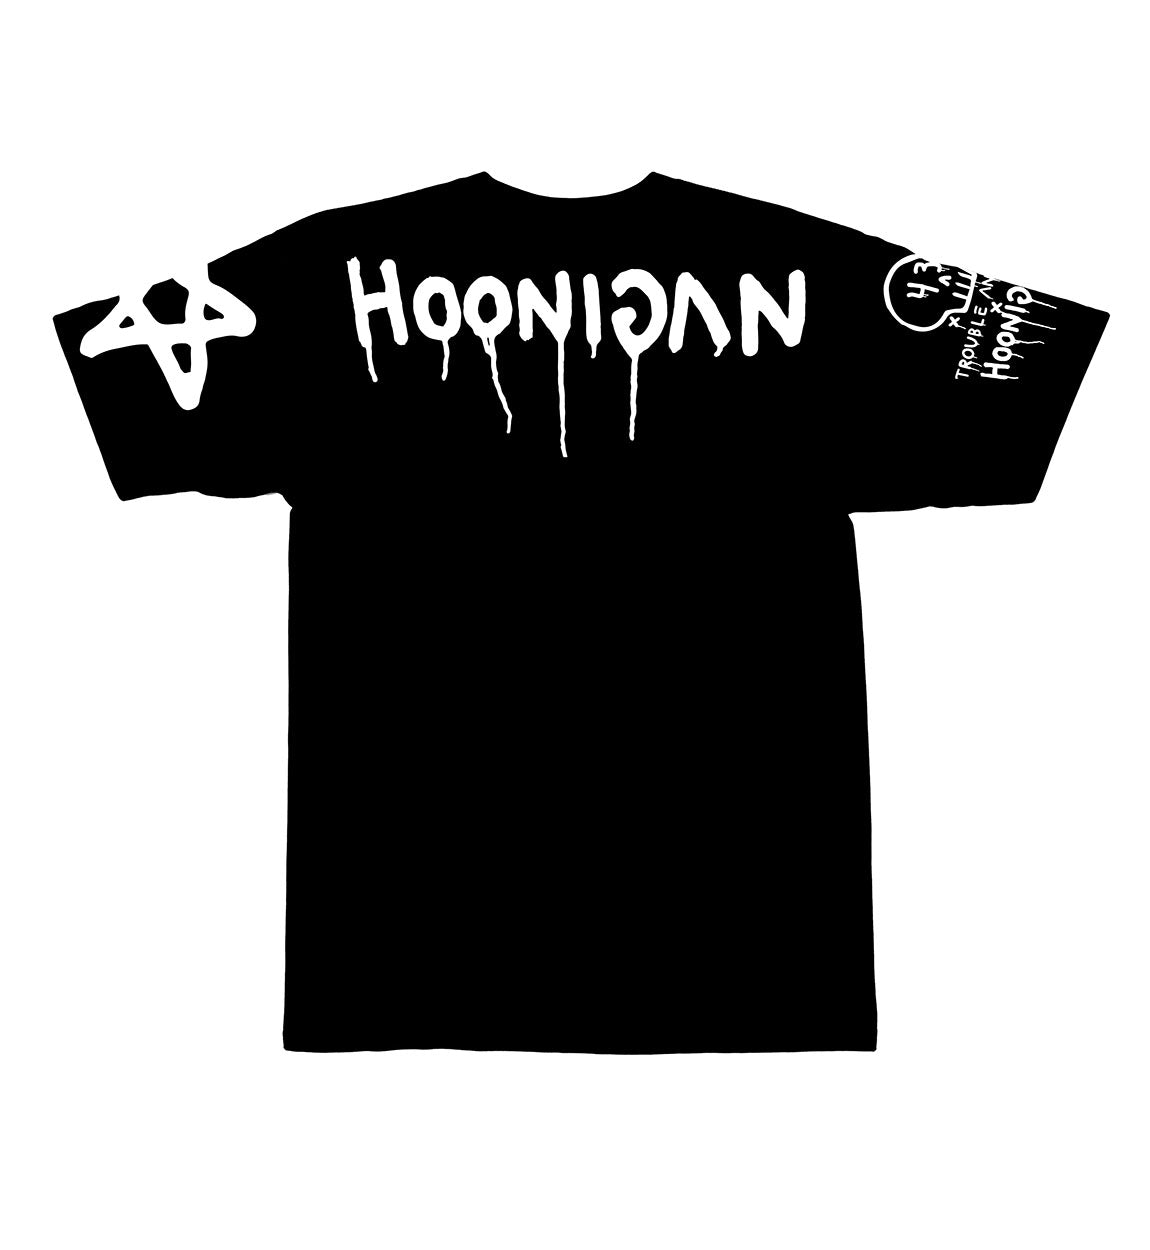 Ken Block x Trouble Andrew x Hoonigan BIG GHOST/43 short sleeve t-shirt